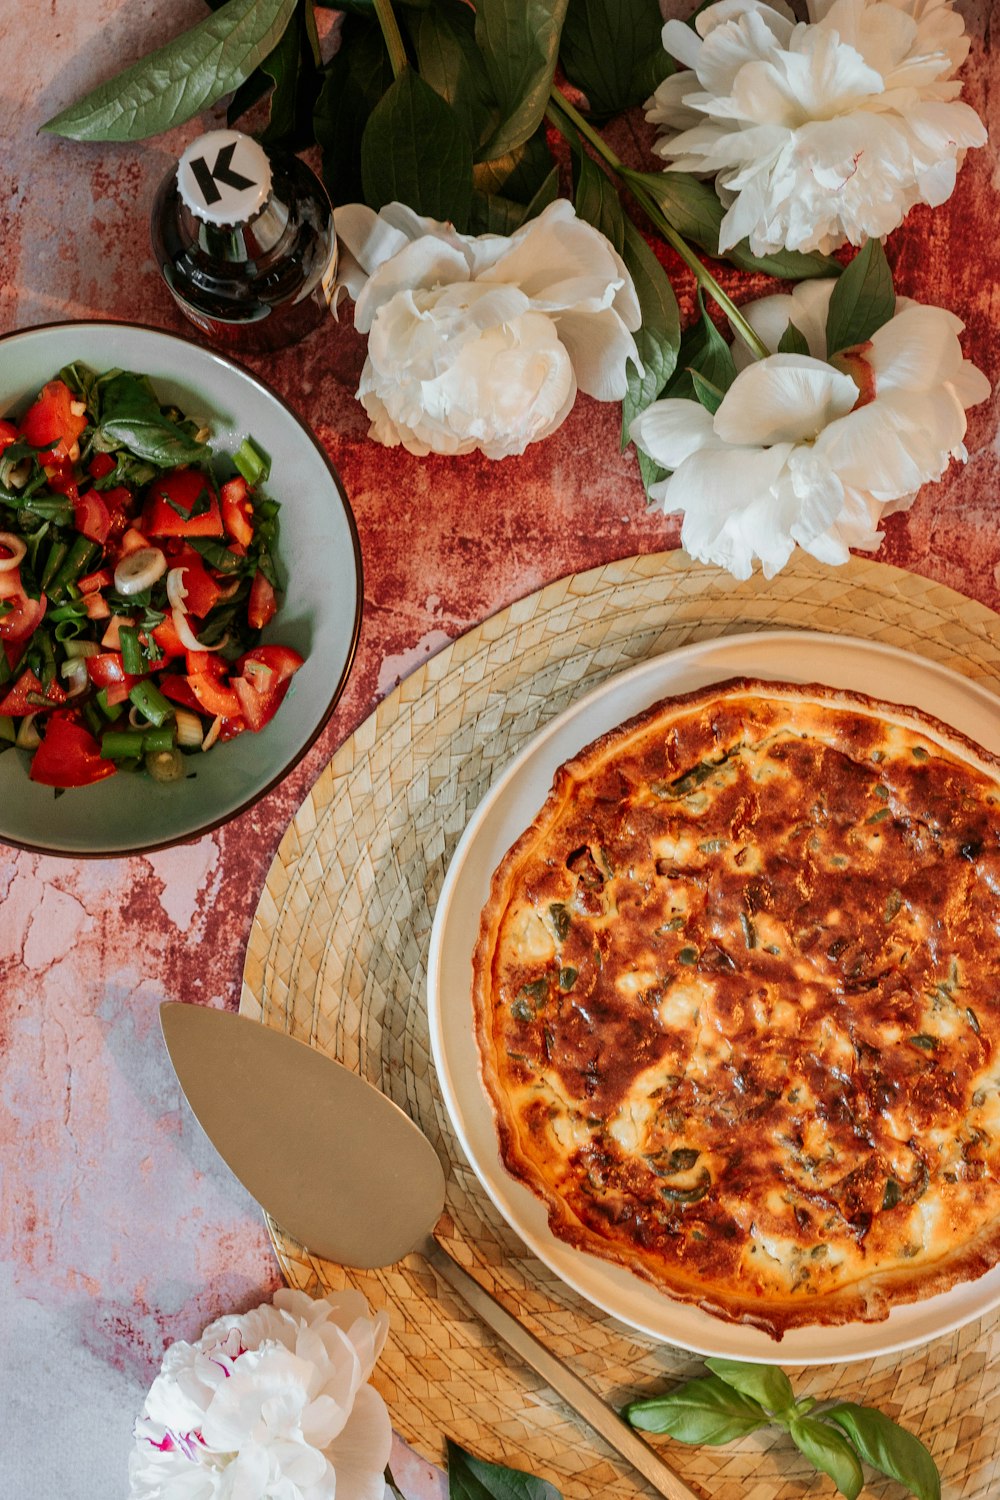 갈색 나무 쟁반에 빨간색과 흰색 꽃이 있는 피자